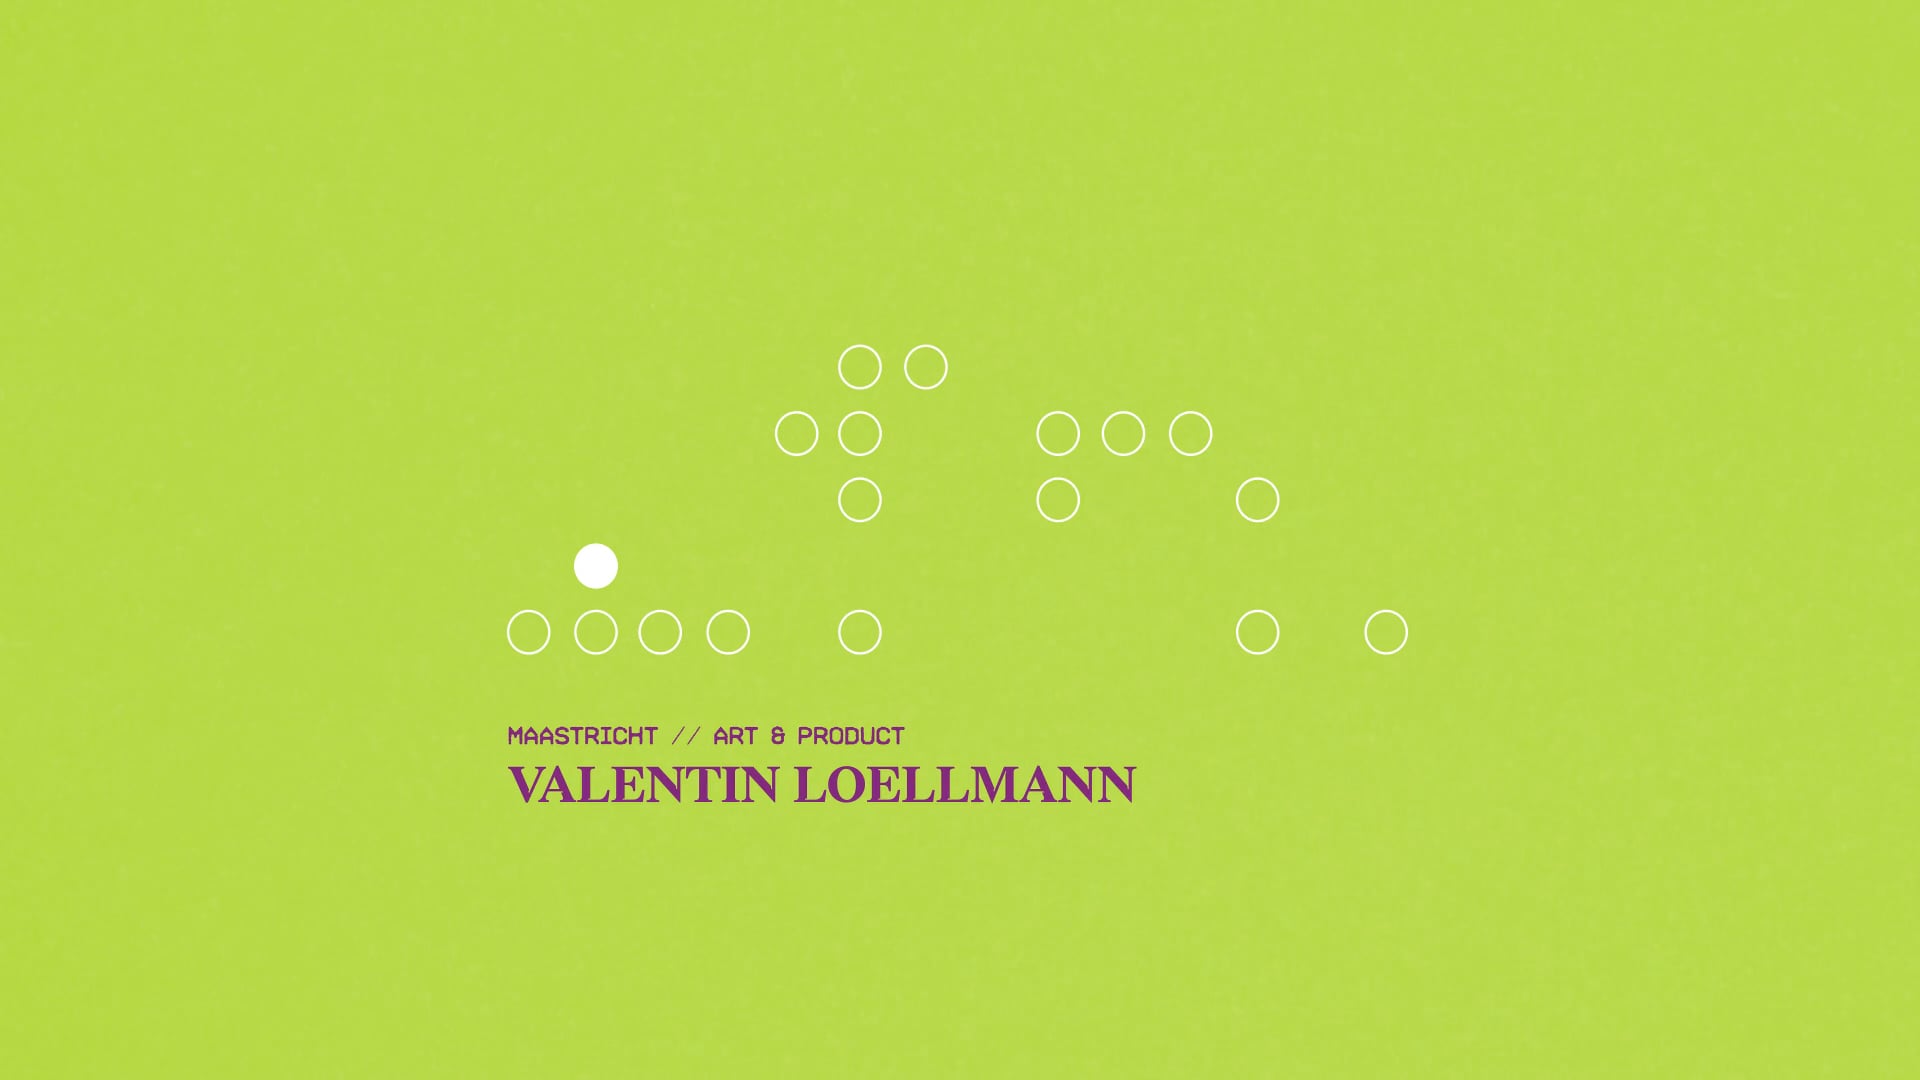 Valentin Loellmann - dutchDesign2019